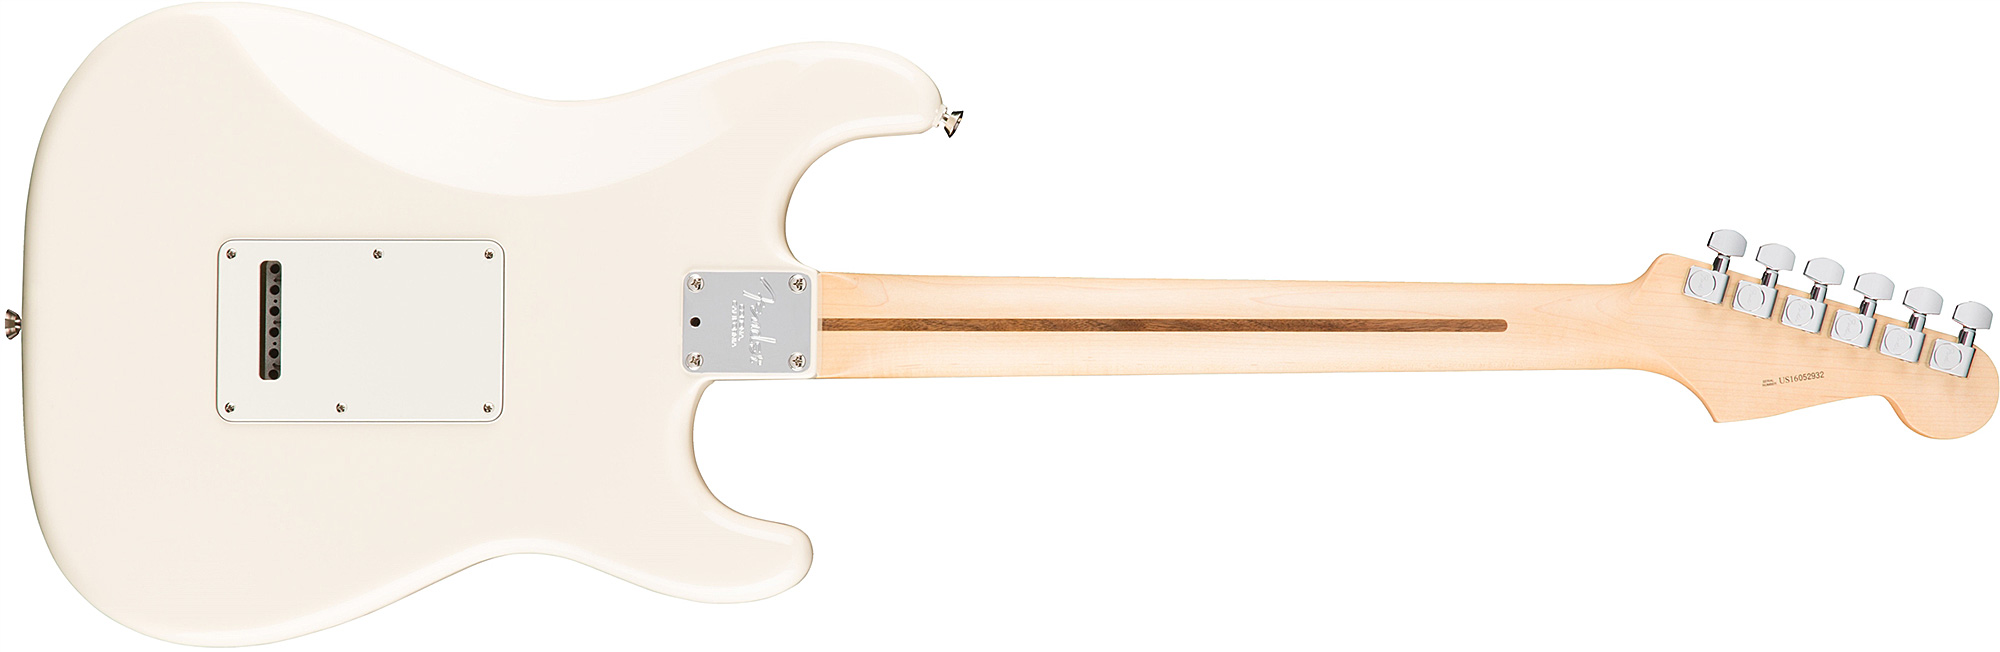 Fender Strat American Professional Lh Usa Gaucher 3s Rw - Olympic White - Linkshandige elektrische gitaar - Variation 1